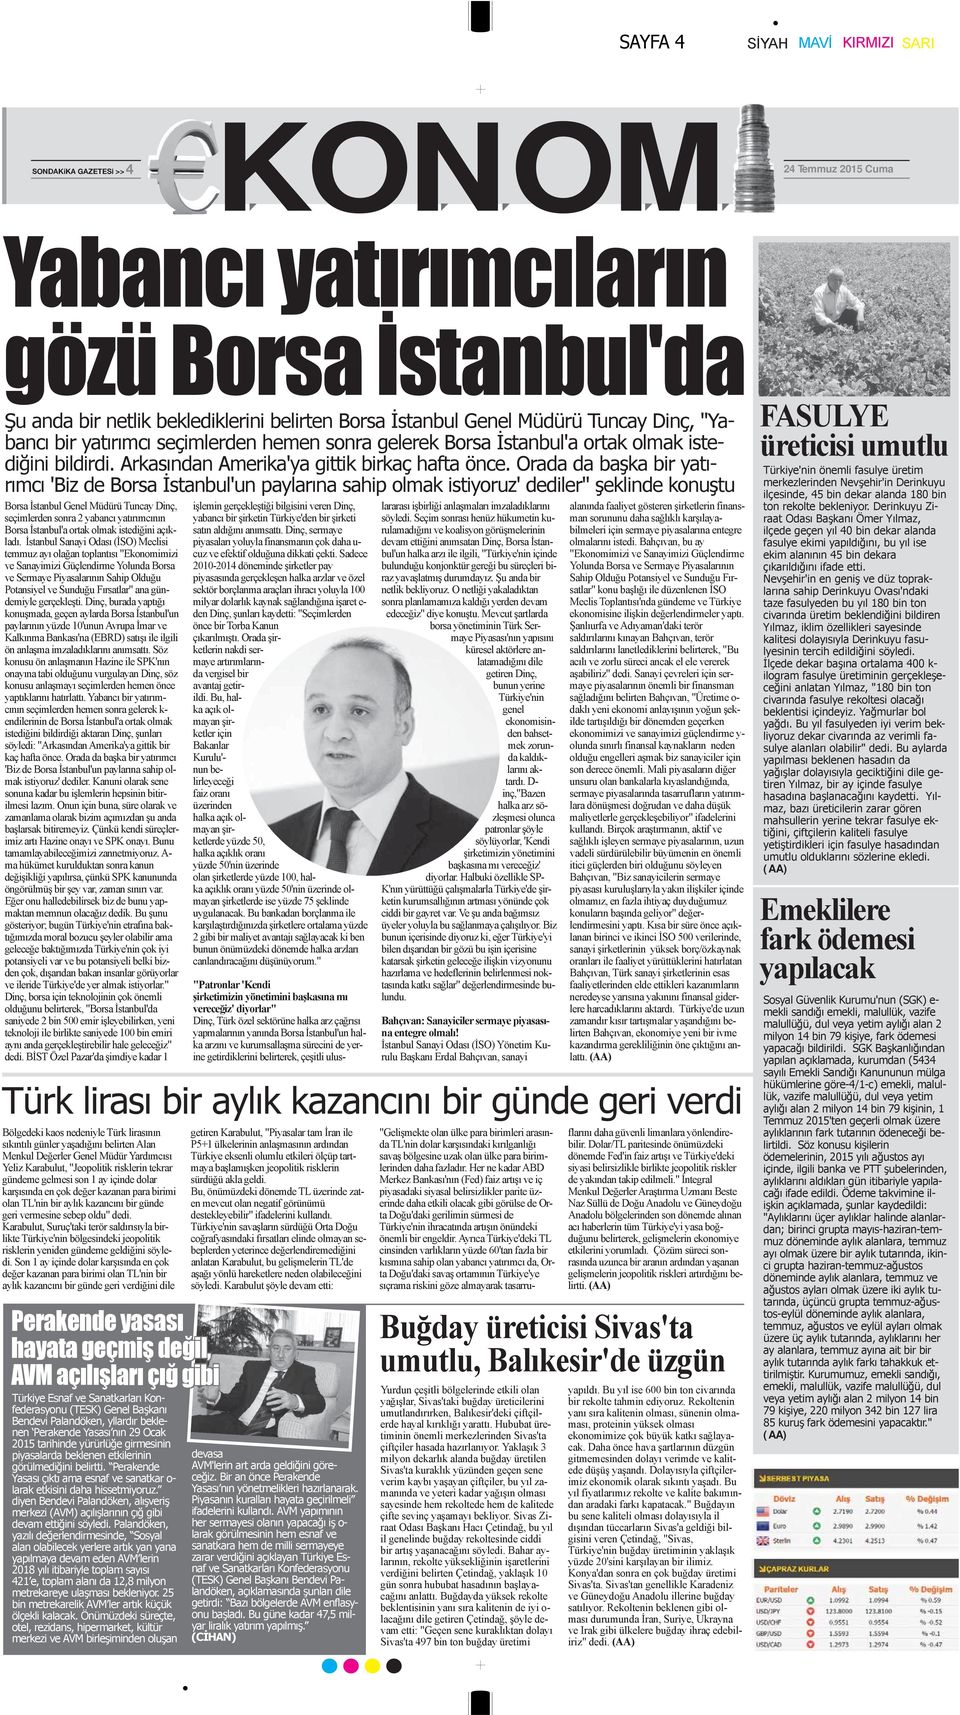 Orada da başka bir yatırımcı 'Biz de Borsa İstanbul'un paylarına sahip olmak istiyoruz' dediler" şeklinde konuştu Borsa İstanbul Genel Müdürü Tuncay Dinç, seçimlerden sonra 2 yabancı yatırımcının